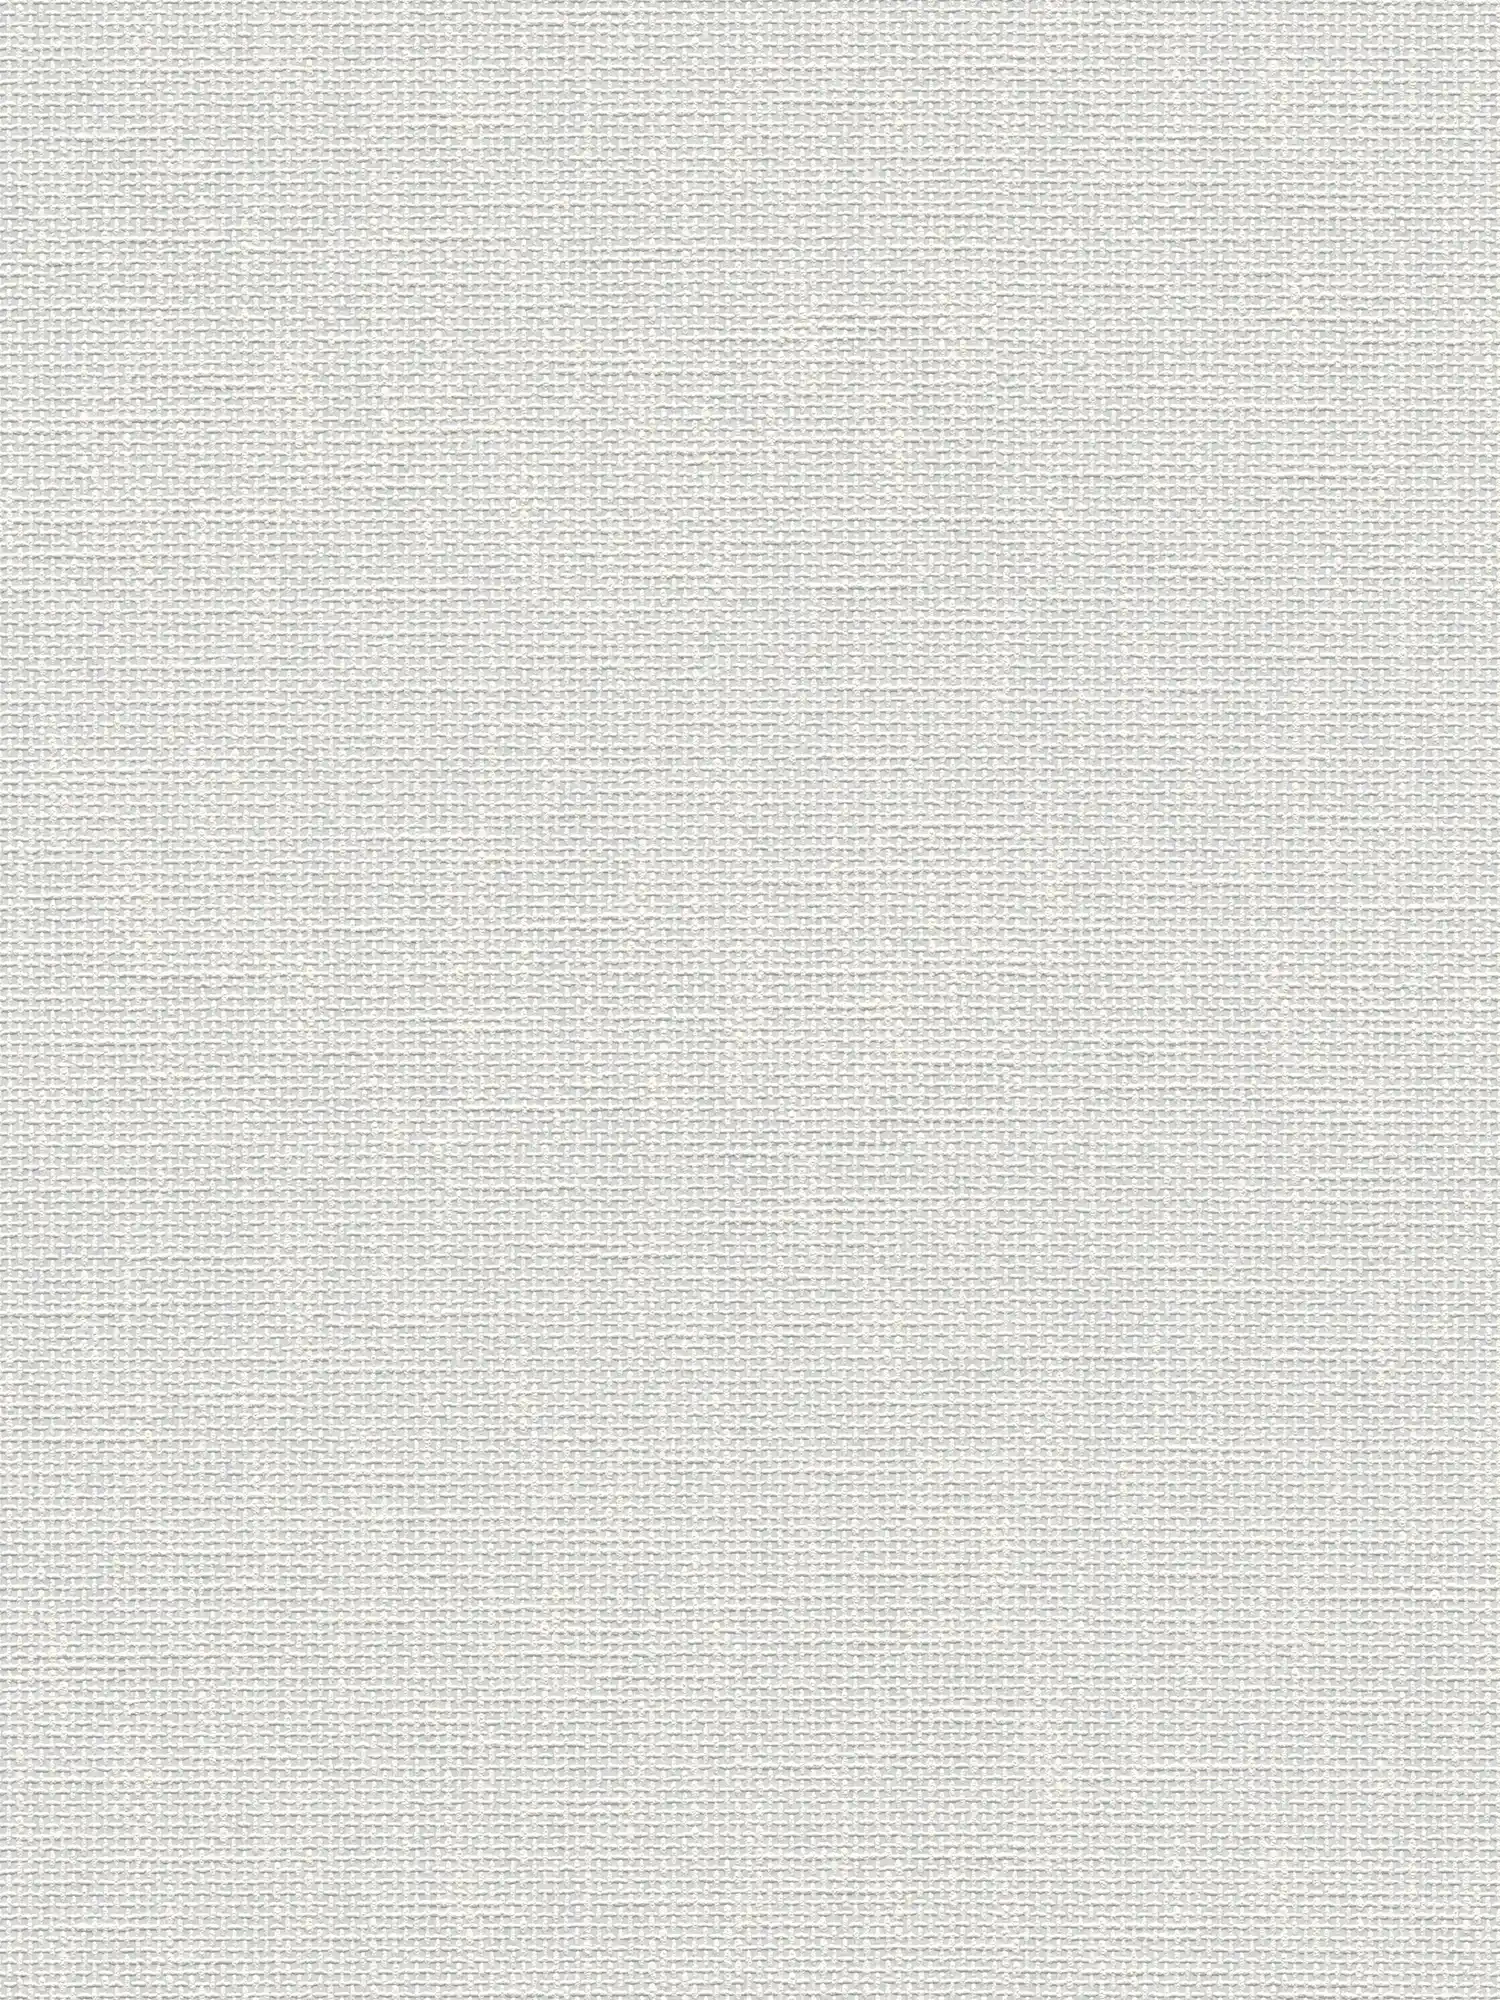 Carta da parati verniciabile in tessuto e aspetto tessile - bianco
